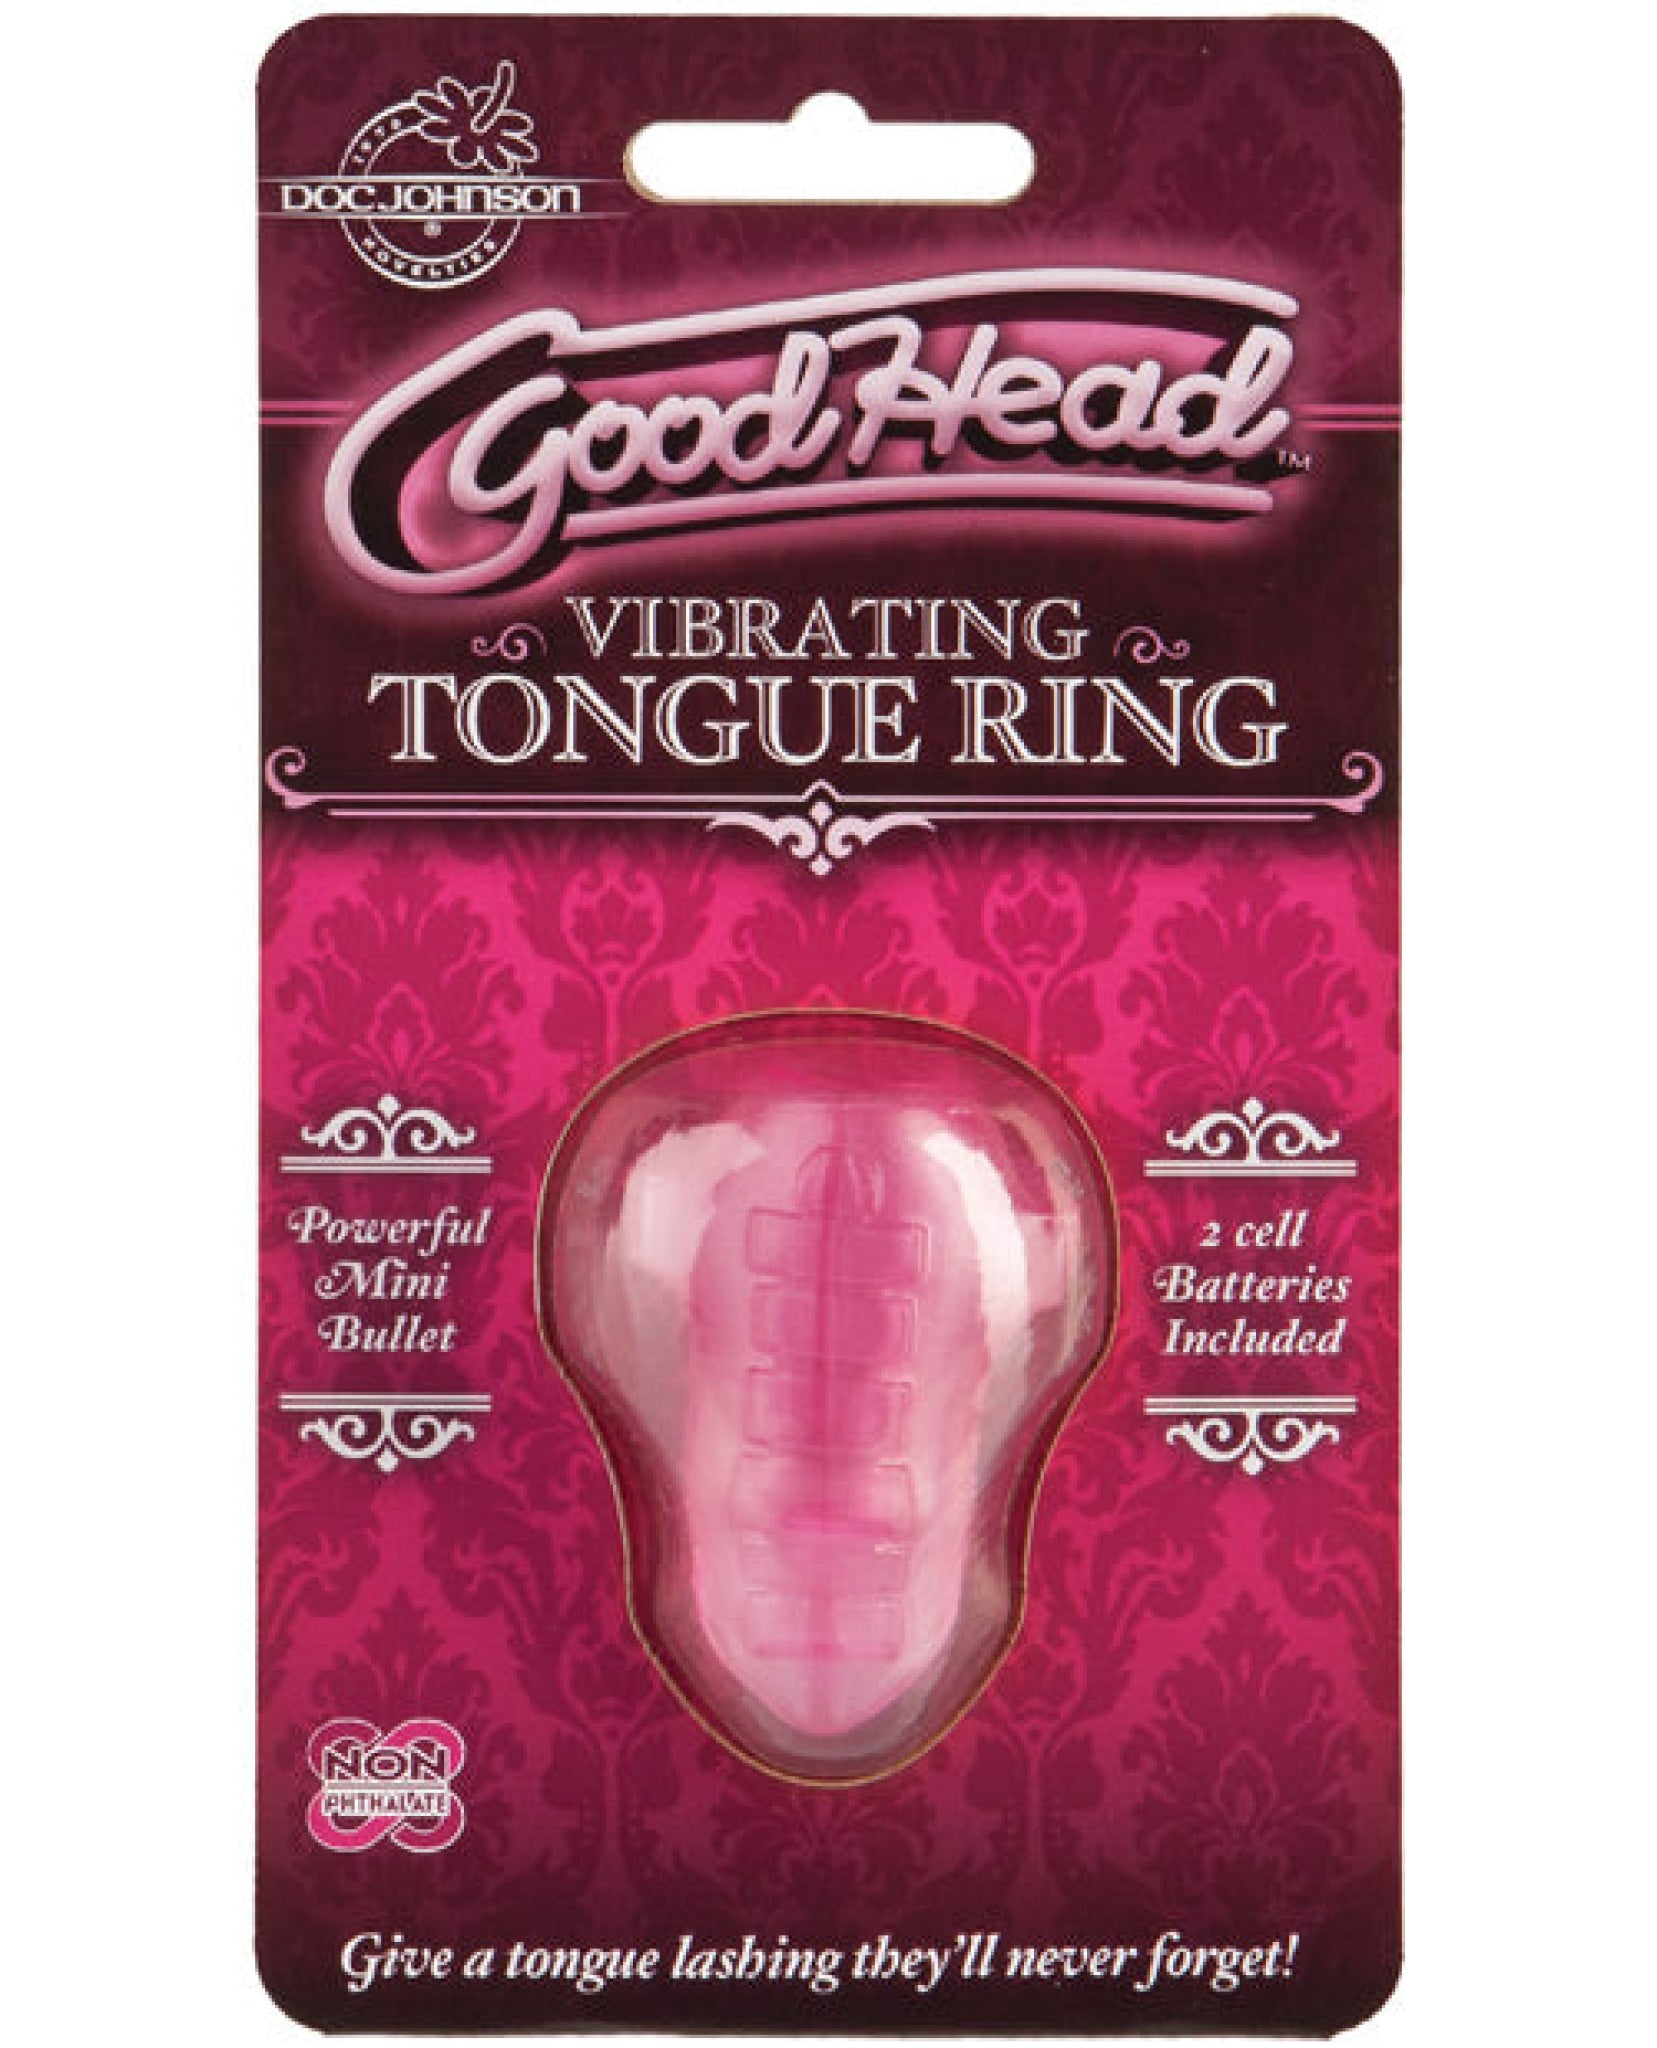 Goodhead Vibrating Tongue Ring - Pink Doc Johnson